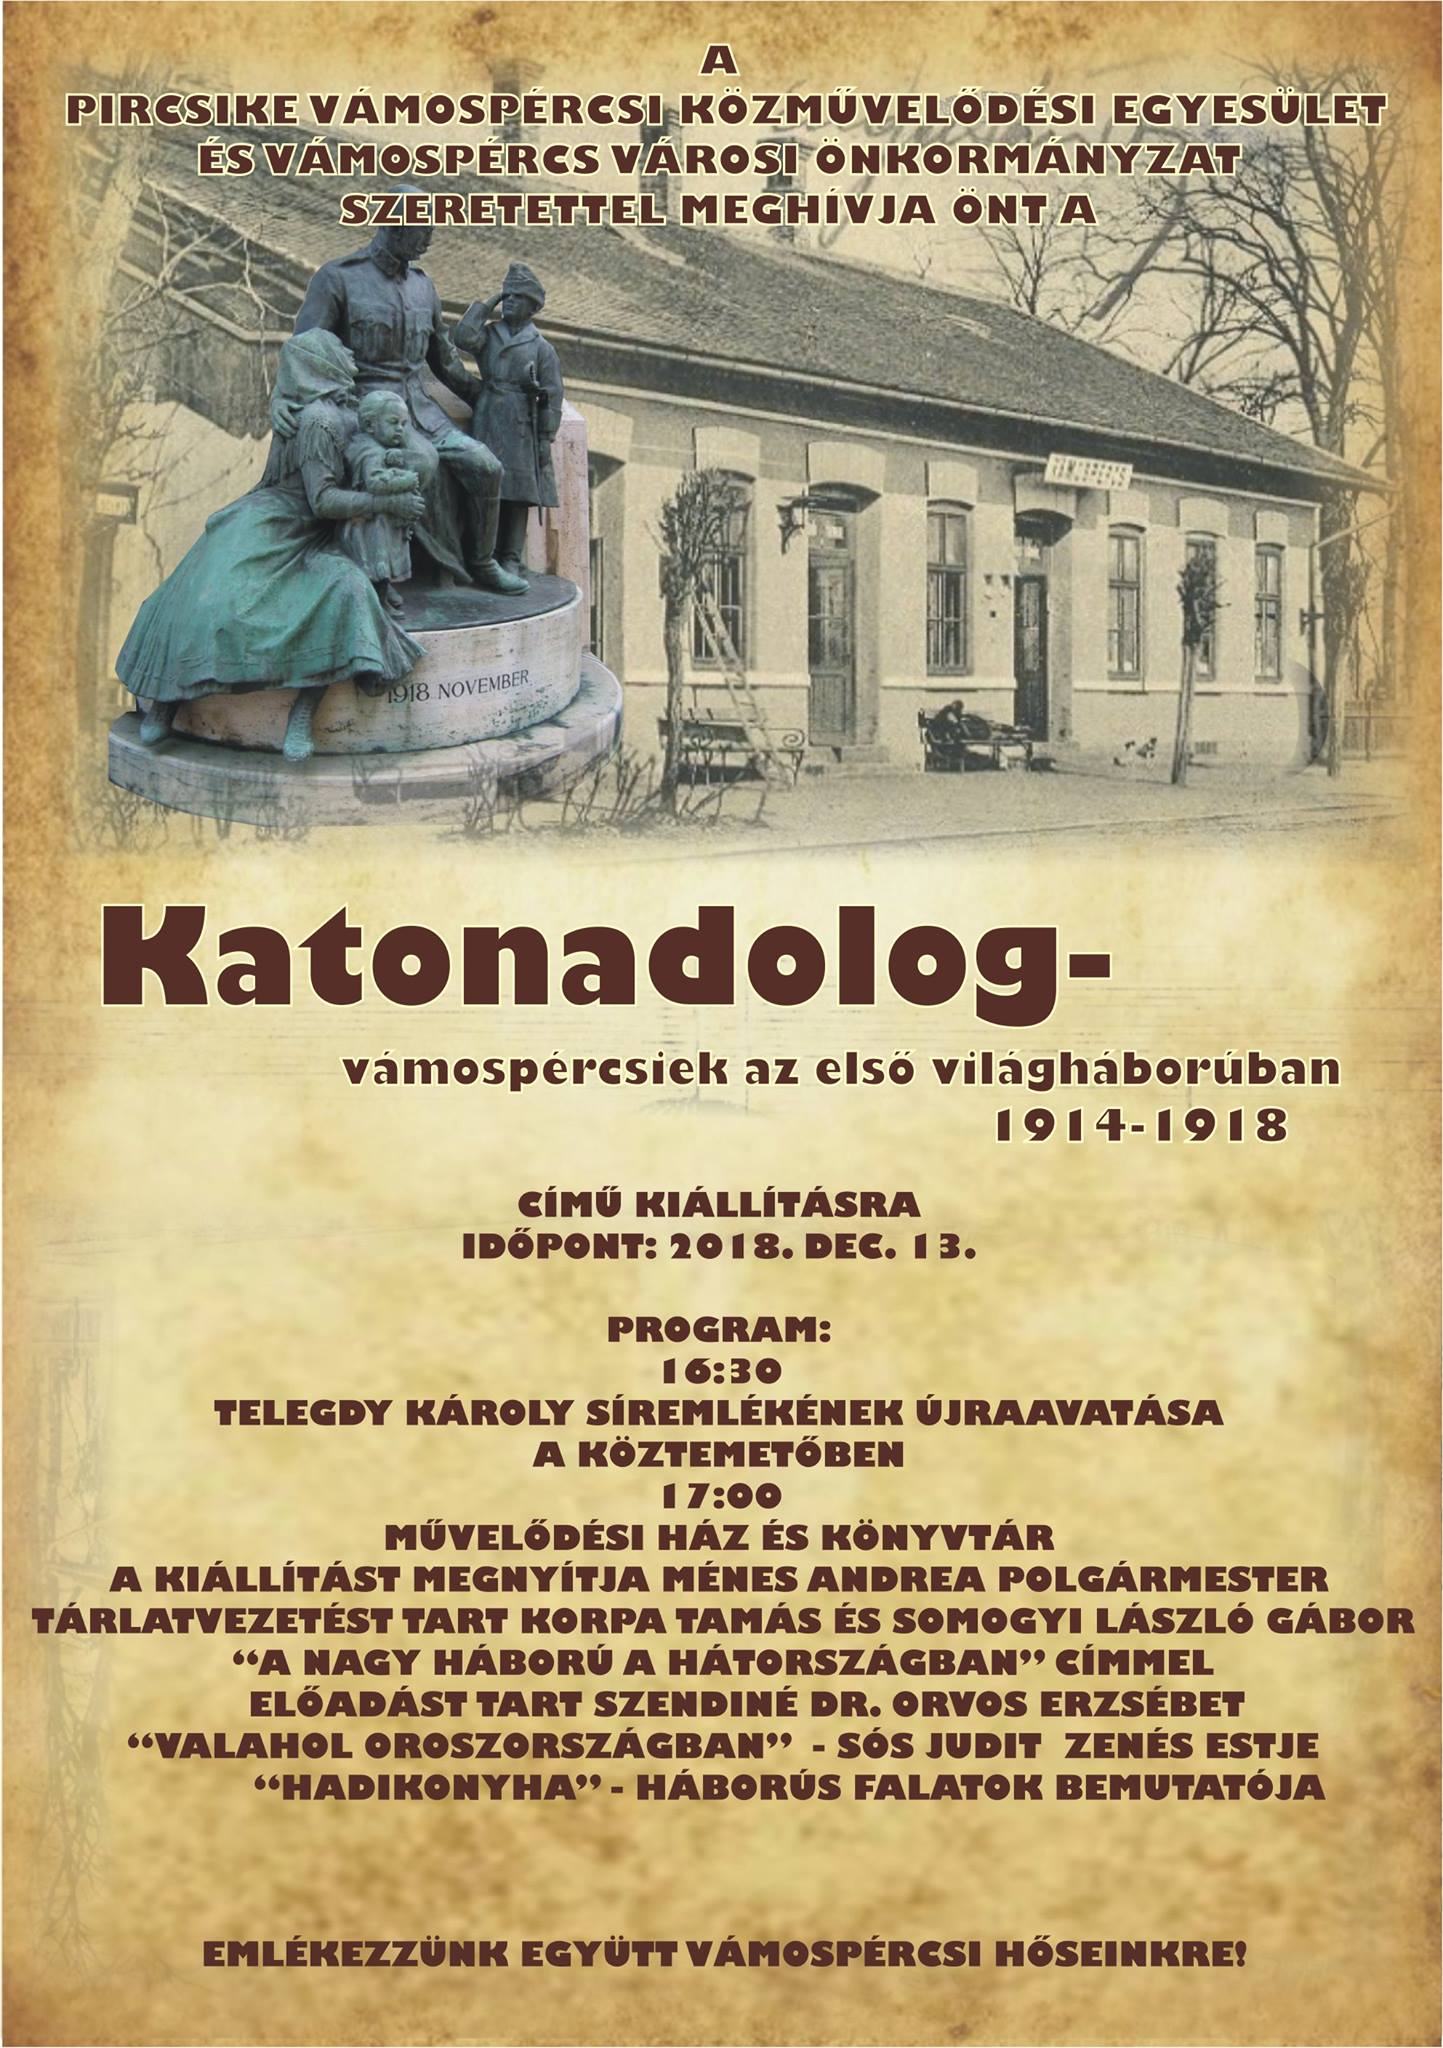 KatonaDolog(plakat)